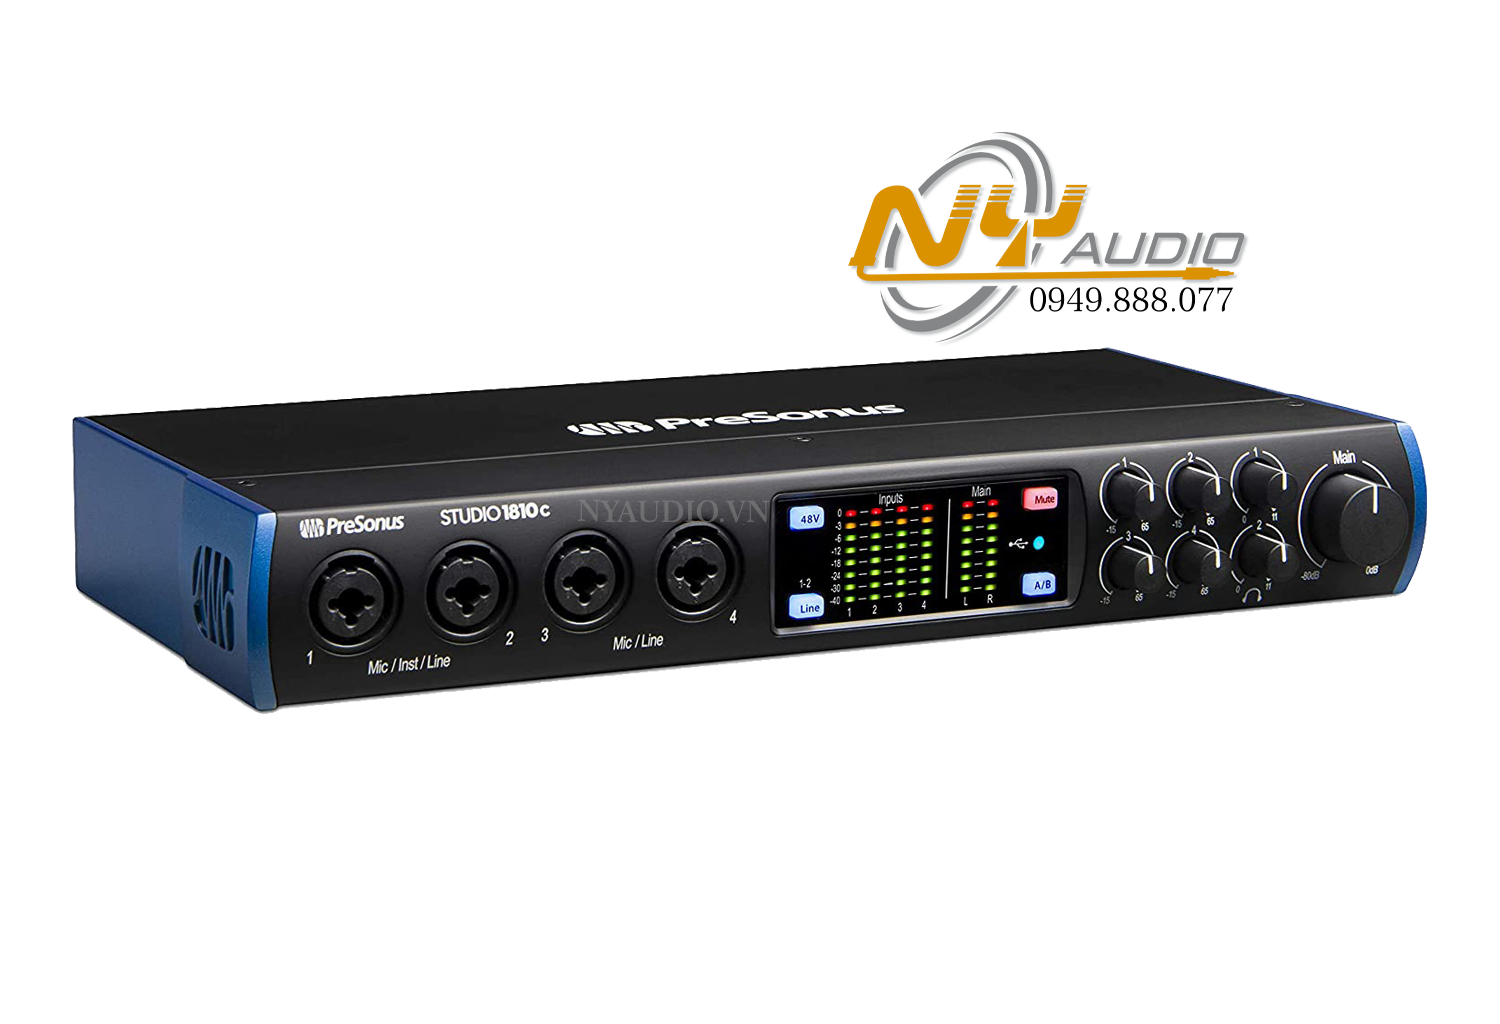 PreSonus Studio 1810C Audio Interface giá rẻ BH chính hãng